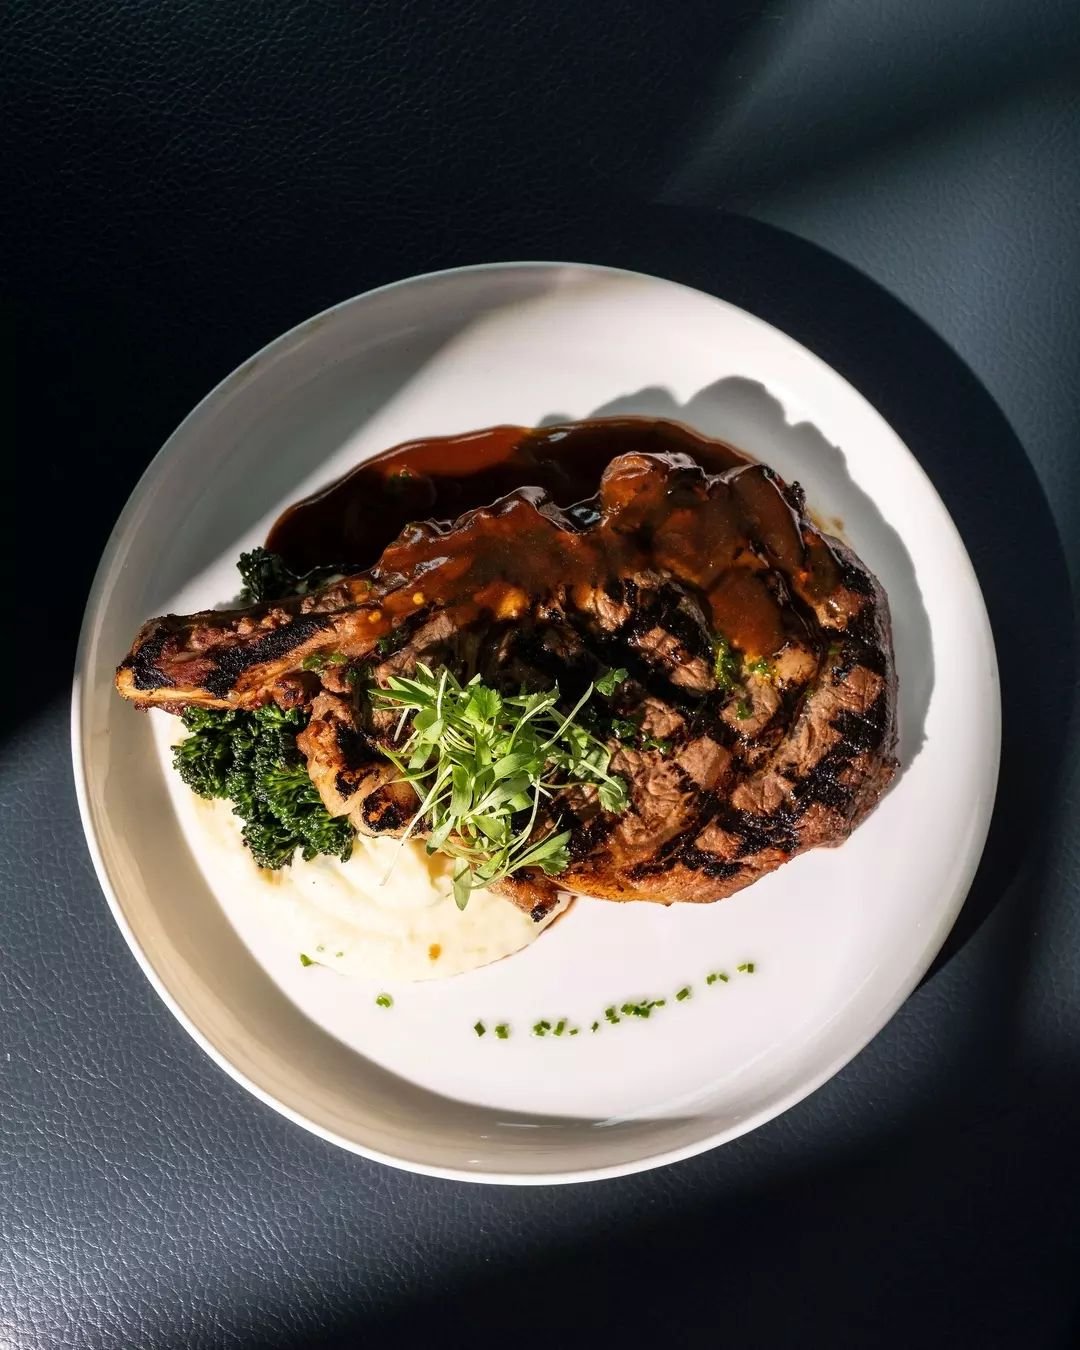 Grilled Ribeye Steak
#NewSpringSummerMenu